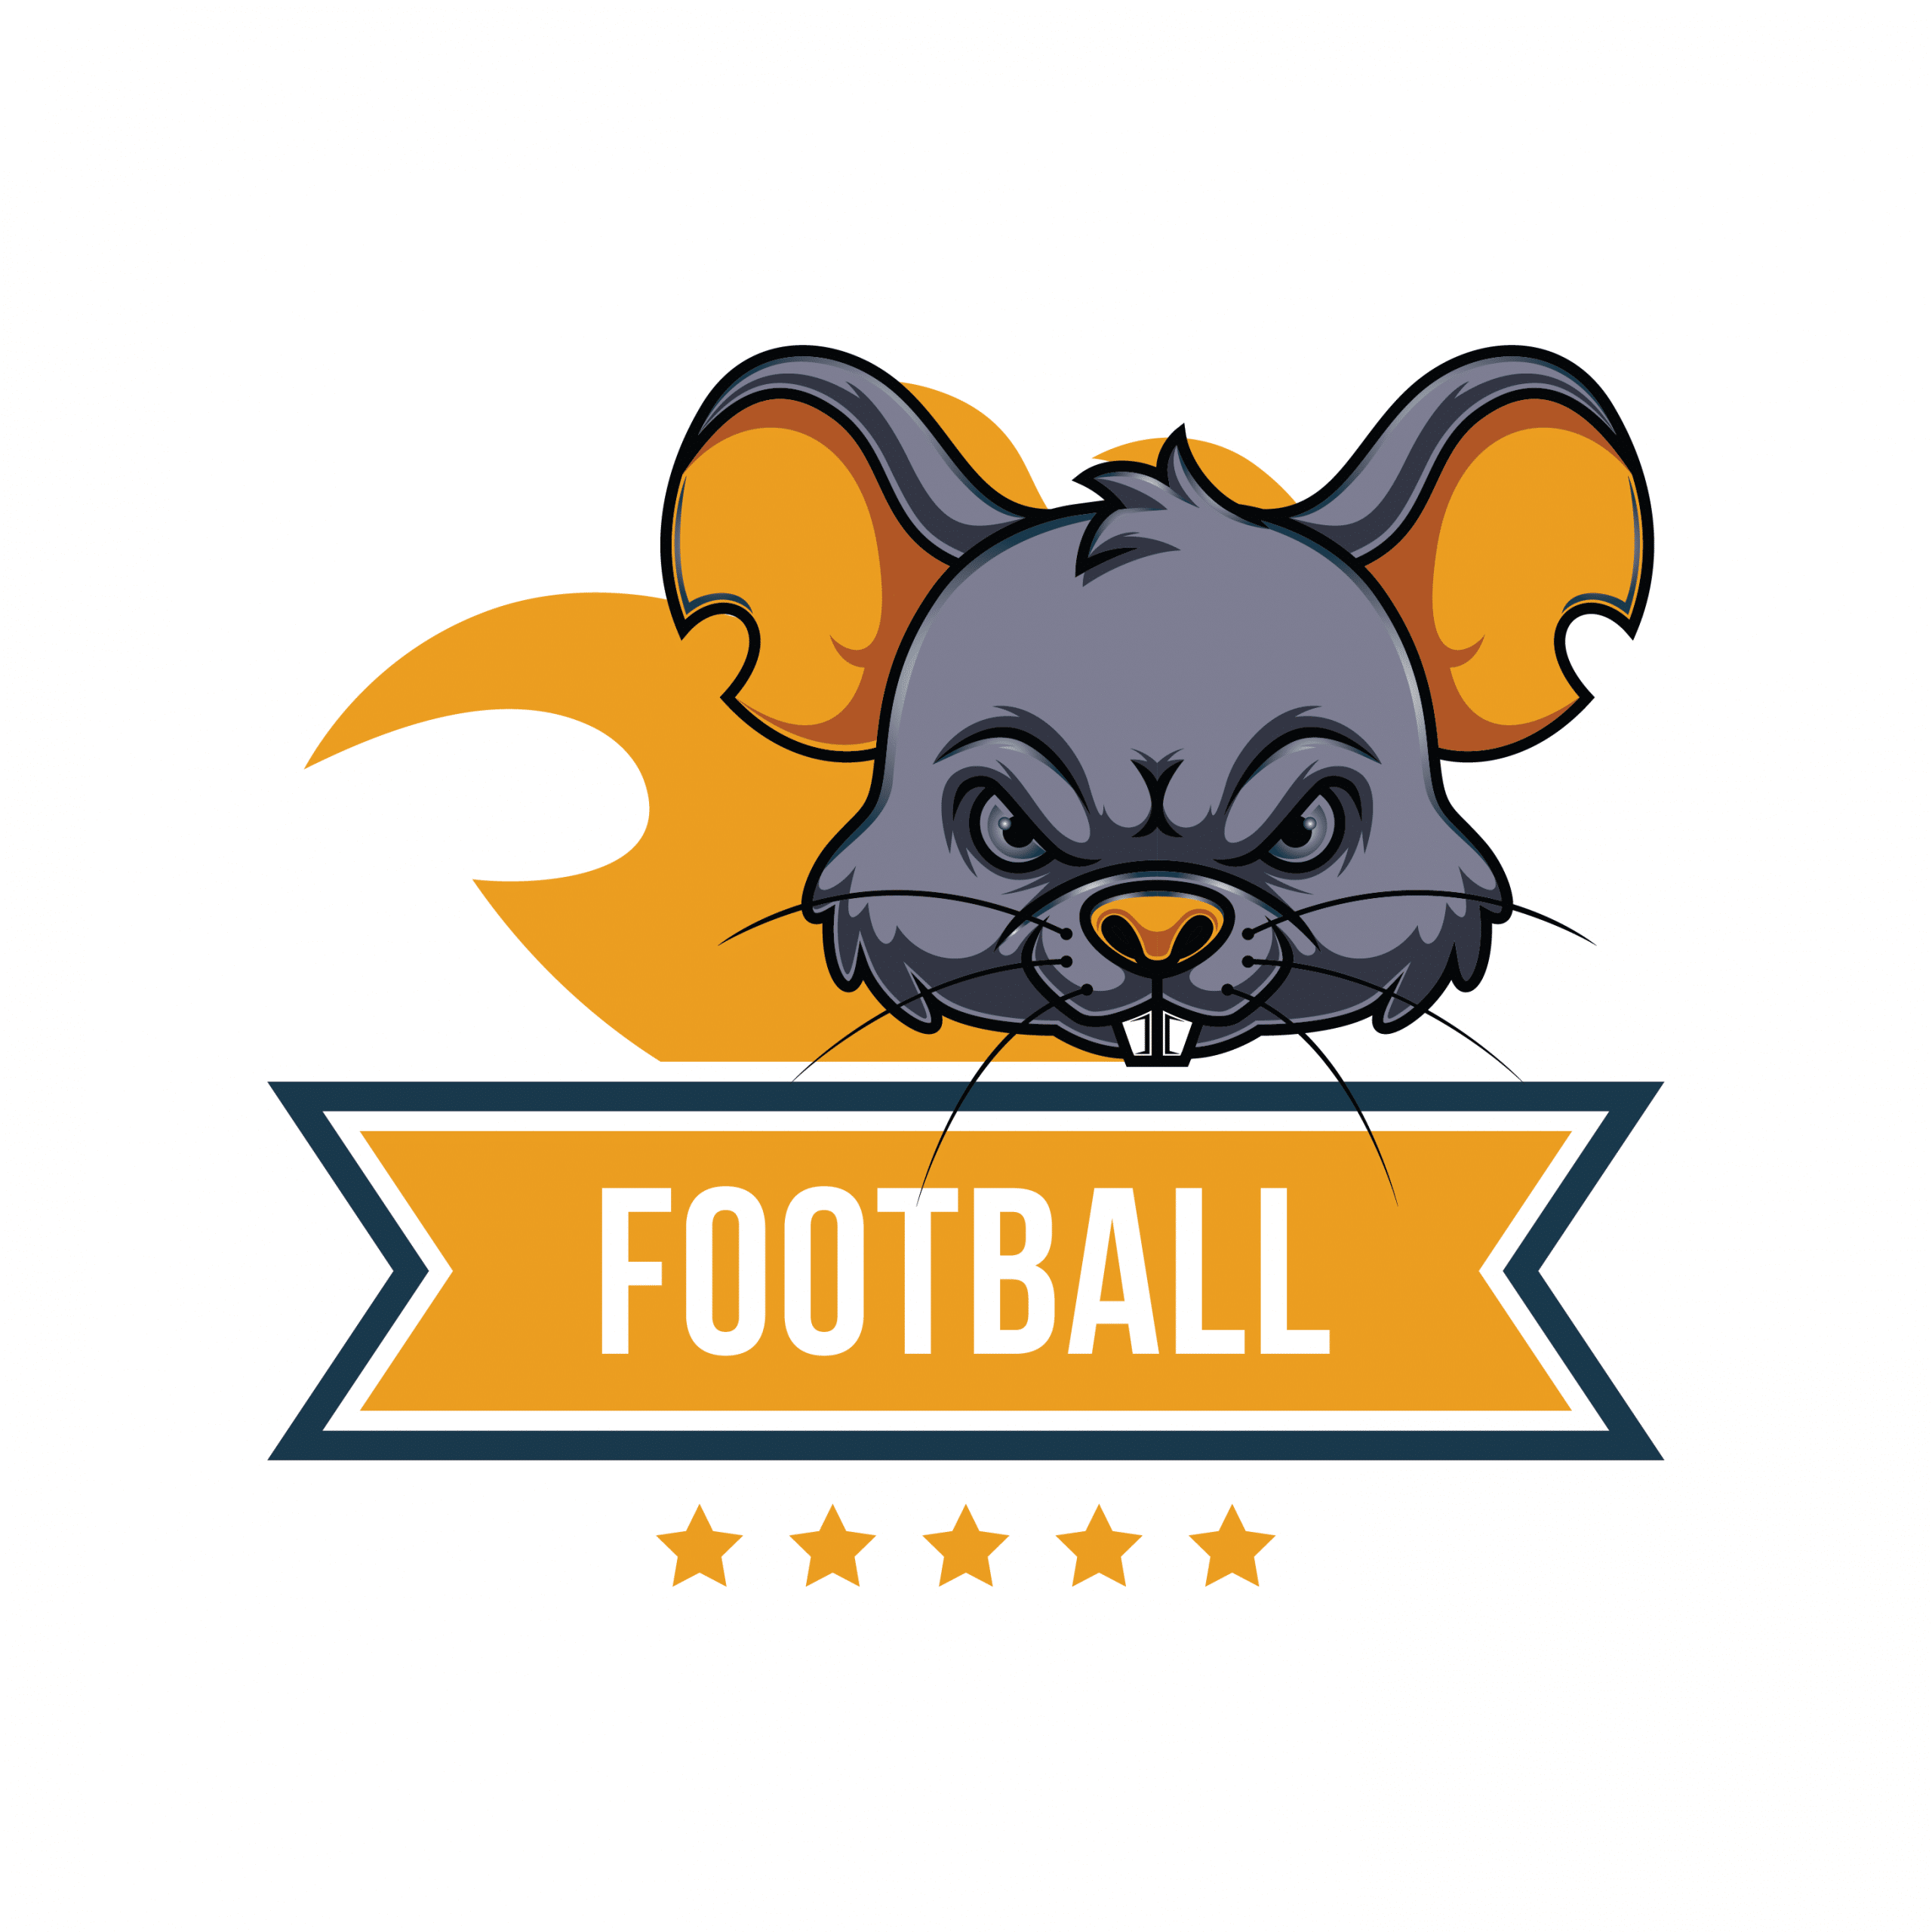 Mẫu logo bóng đá hình con chuột tuổi tý màu vàng tím than